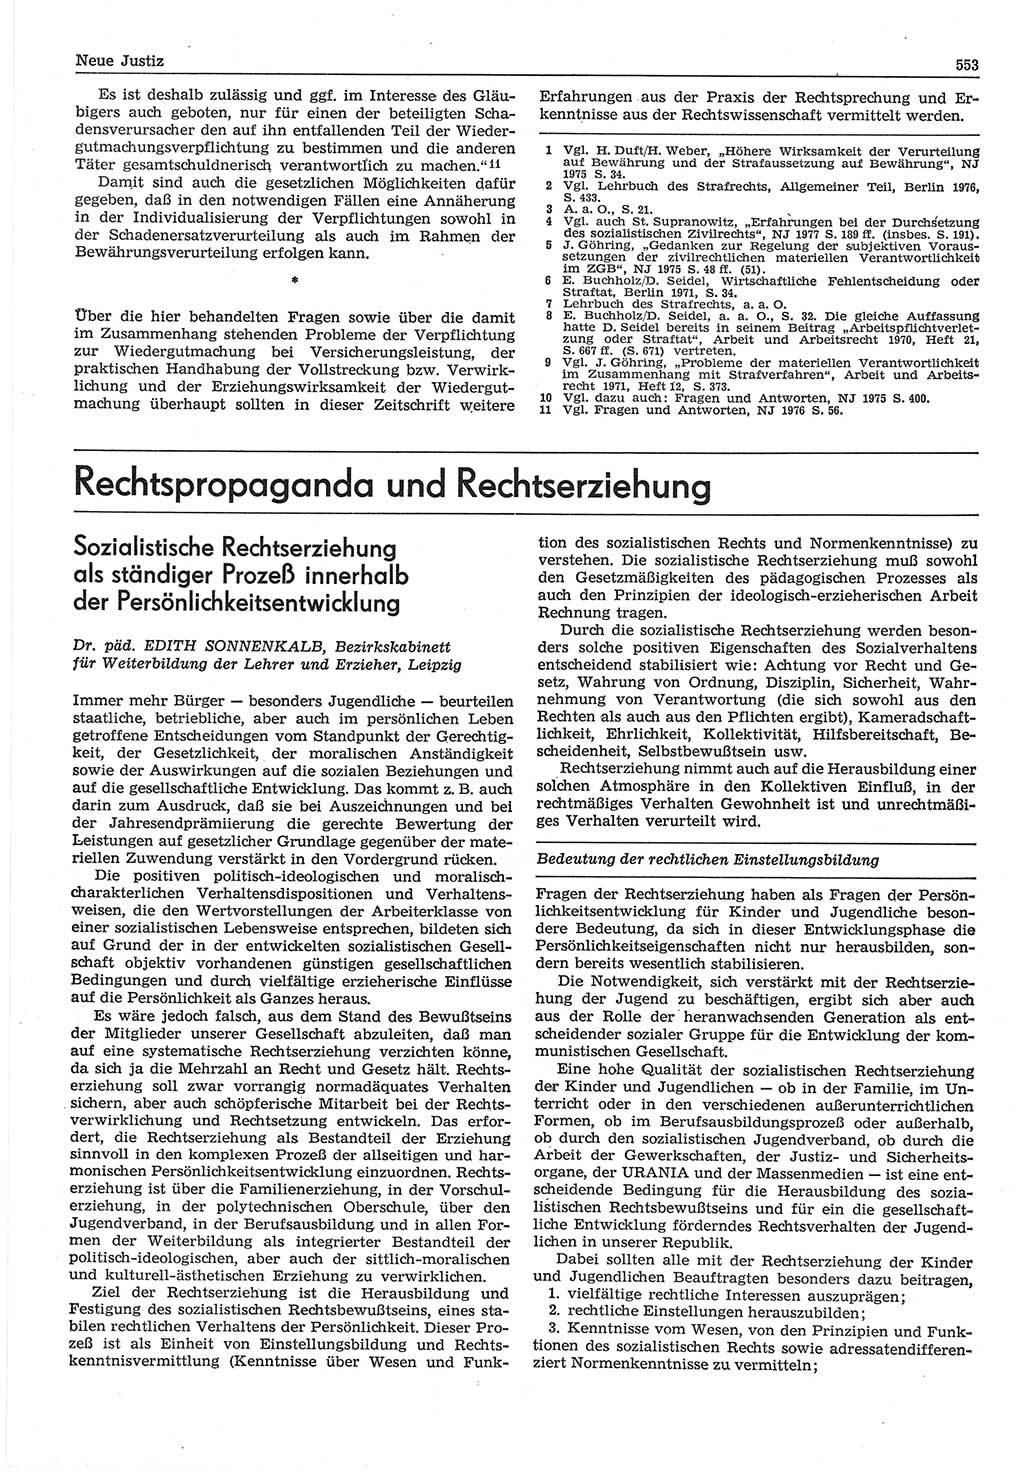 Neue Justiz (NJ), Zeitschrift für Recht und Rechtswissenschaft-Zeitschrift, sozialistisches Recht und Gesetzlichkeit, 31. Jahrgang 1977, Seite 553 (NJ DDR 1977, S. 553)